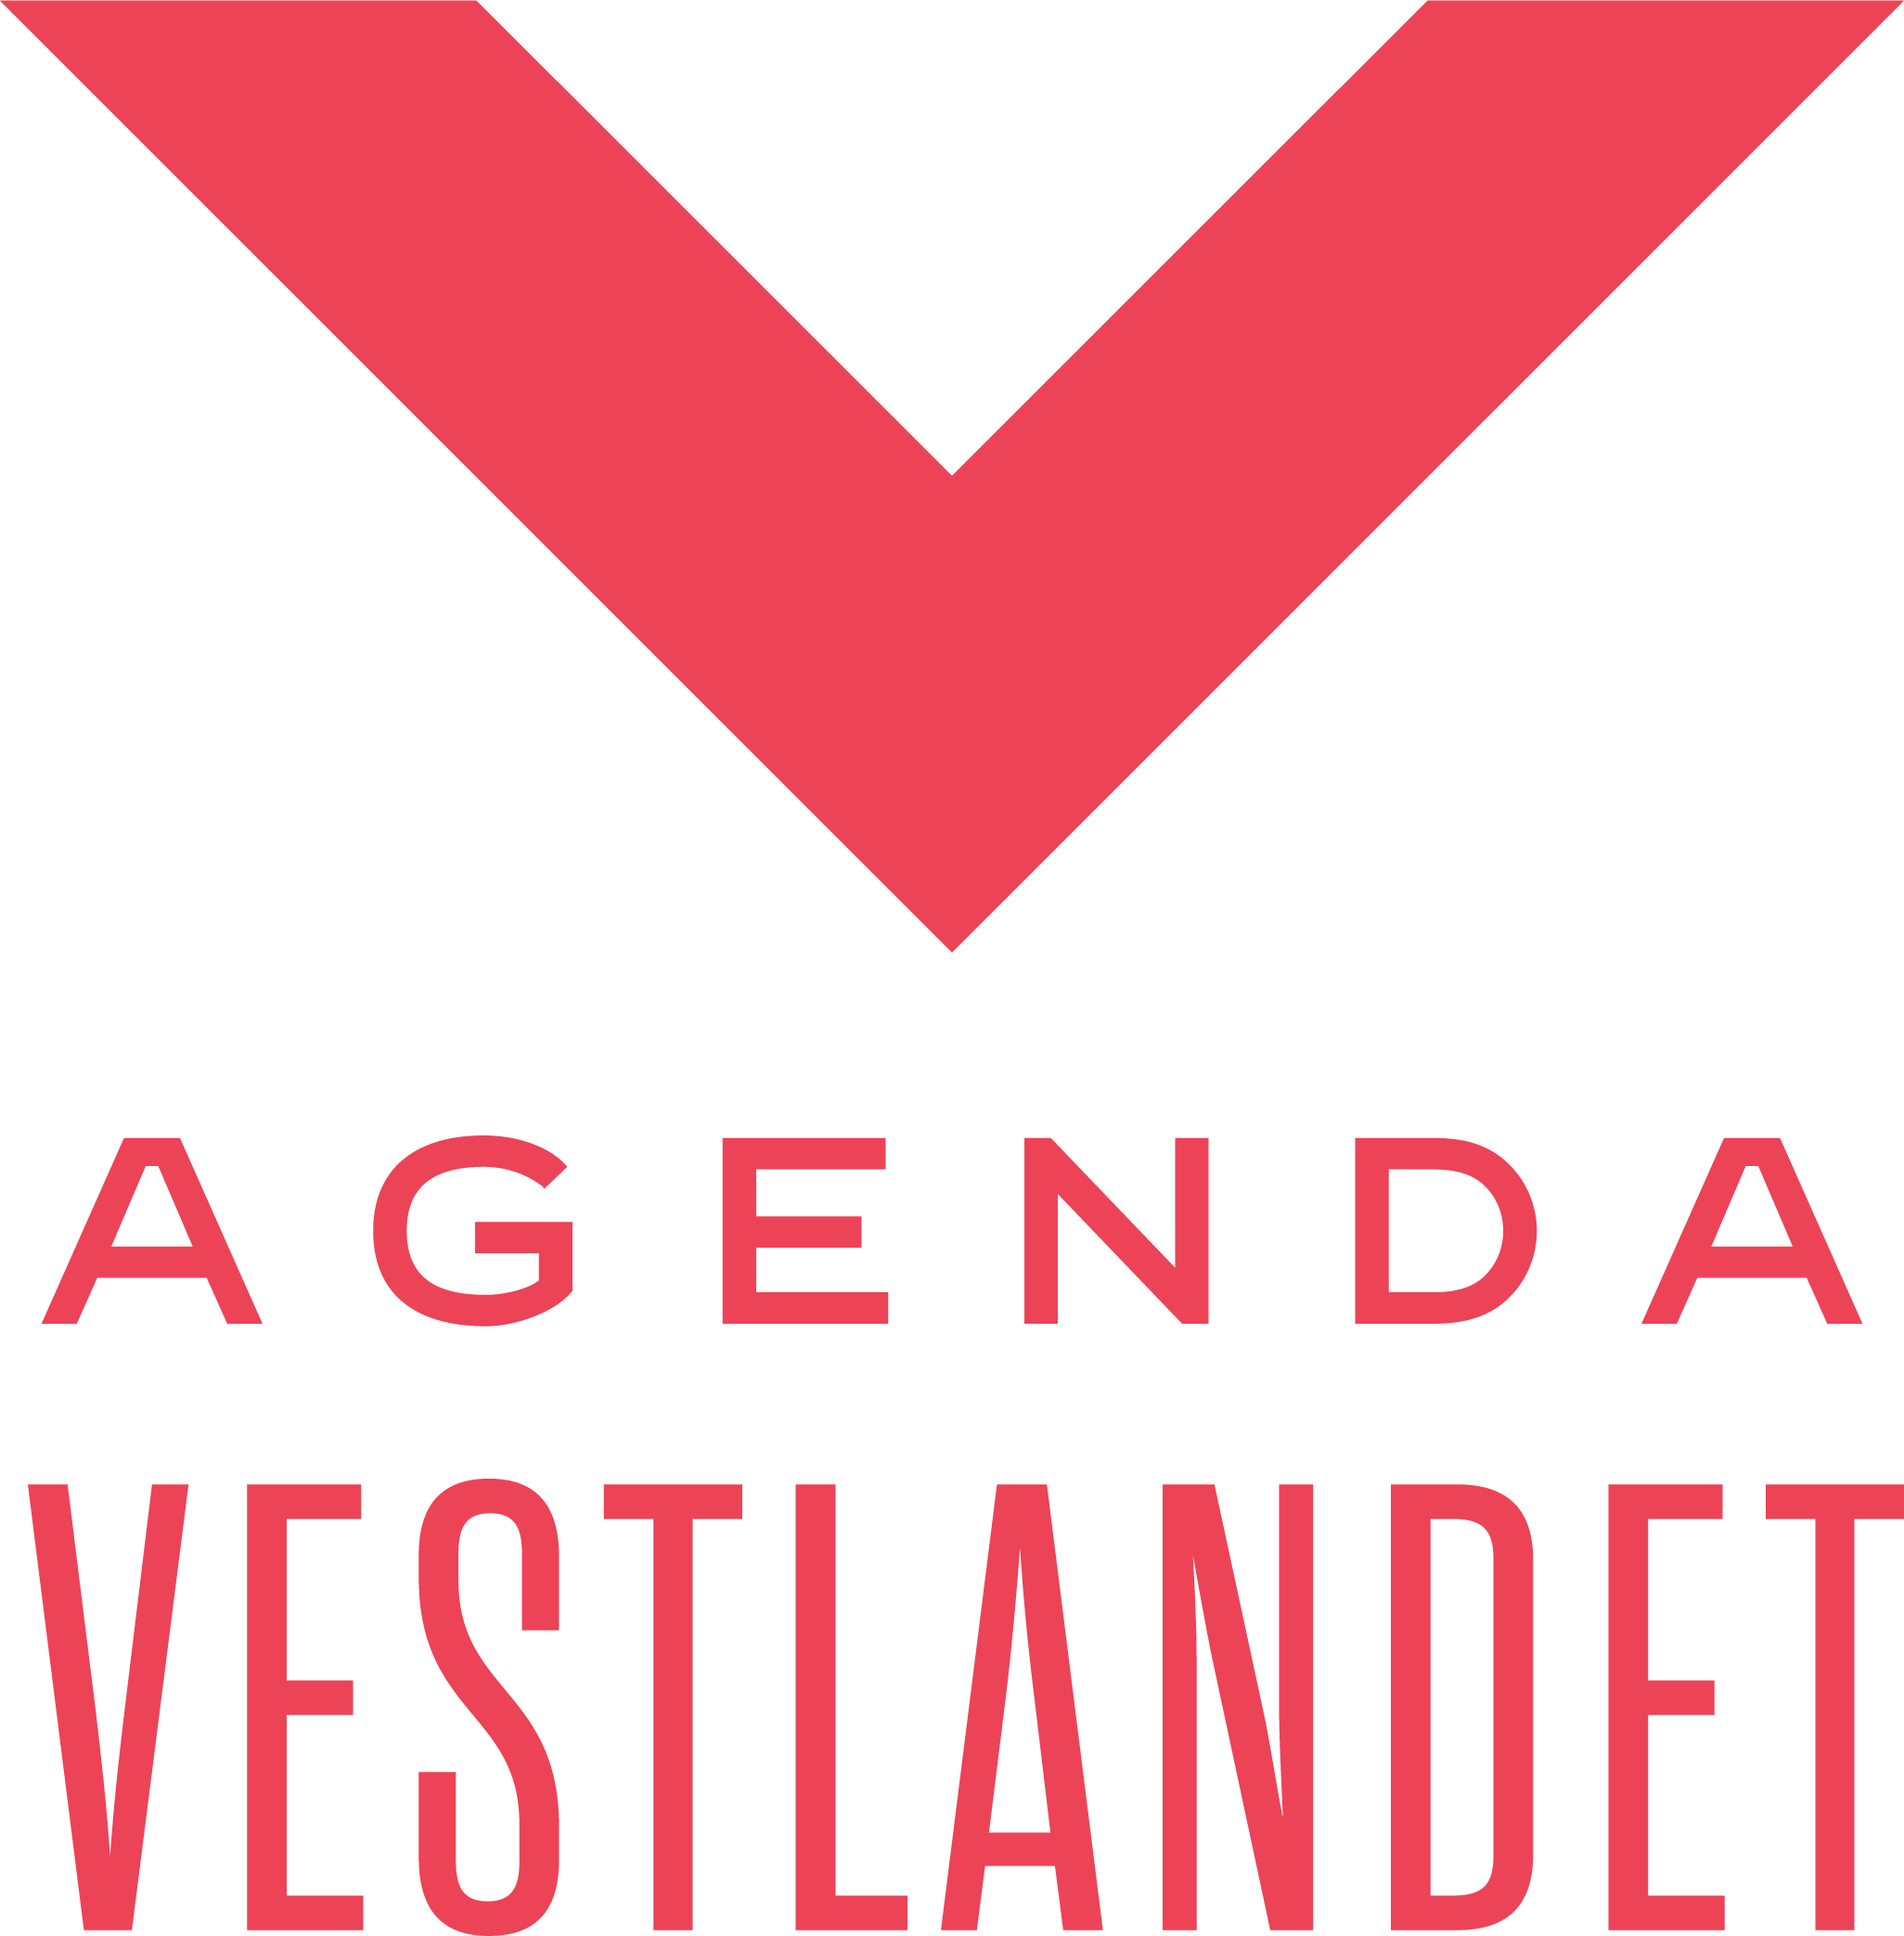 Agenda Vestlandet logo.png